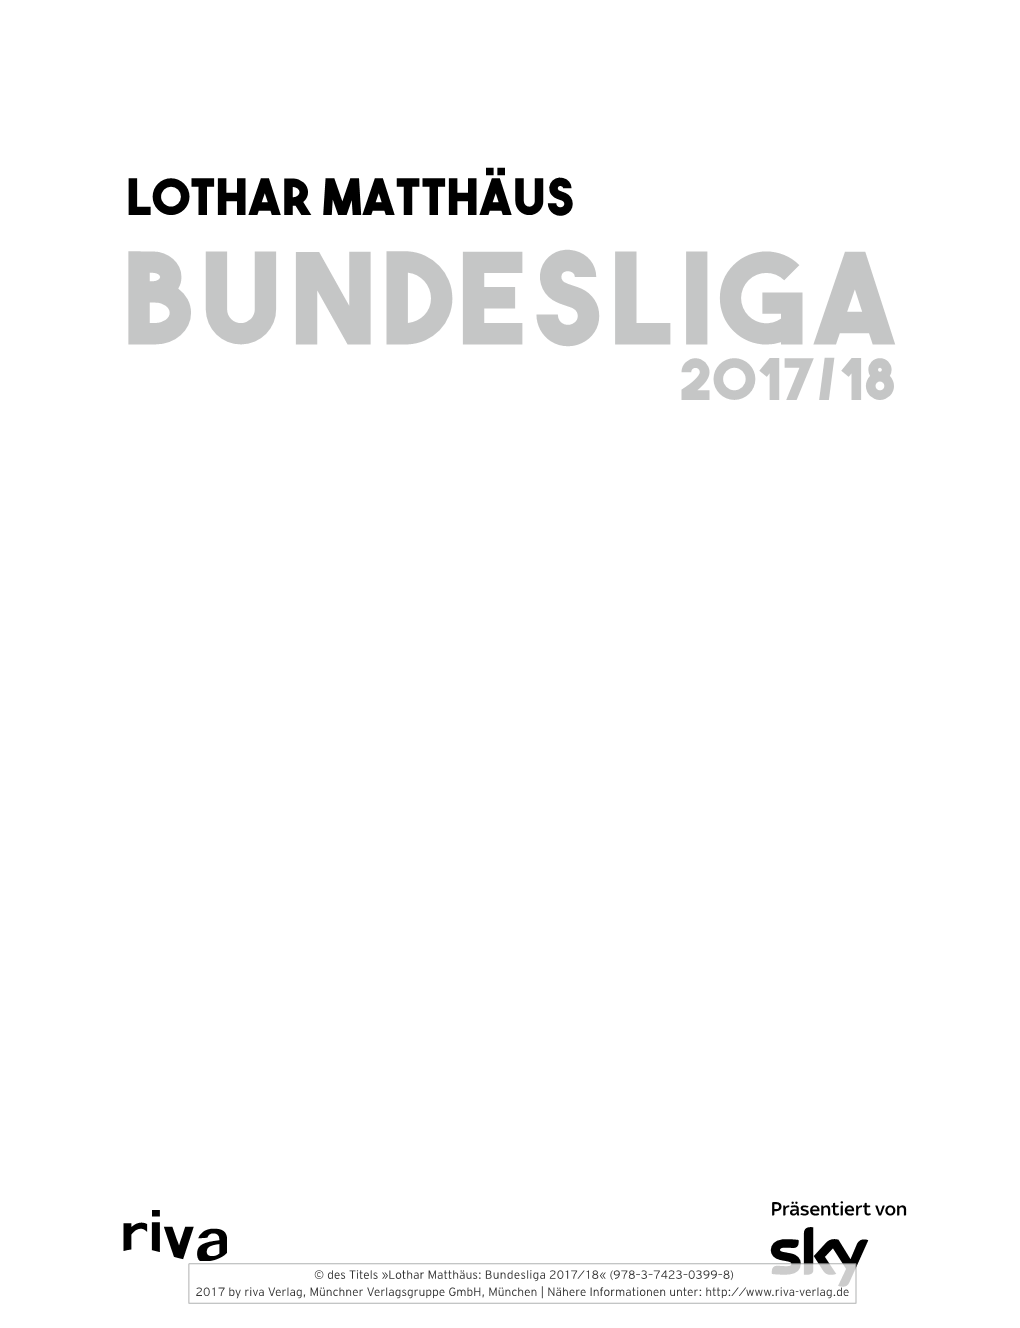 Lothar Matthäus Bundesliga 2017/18